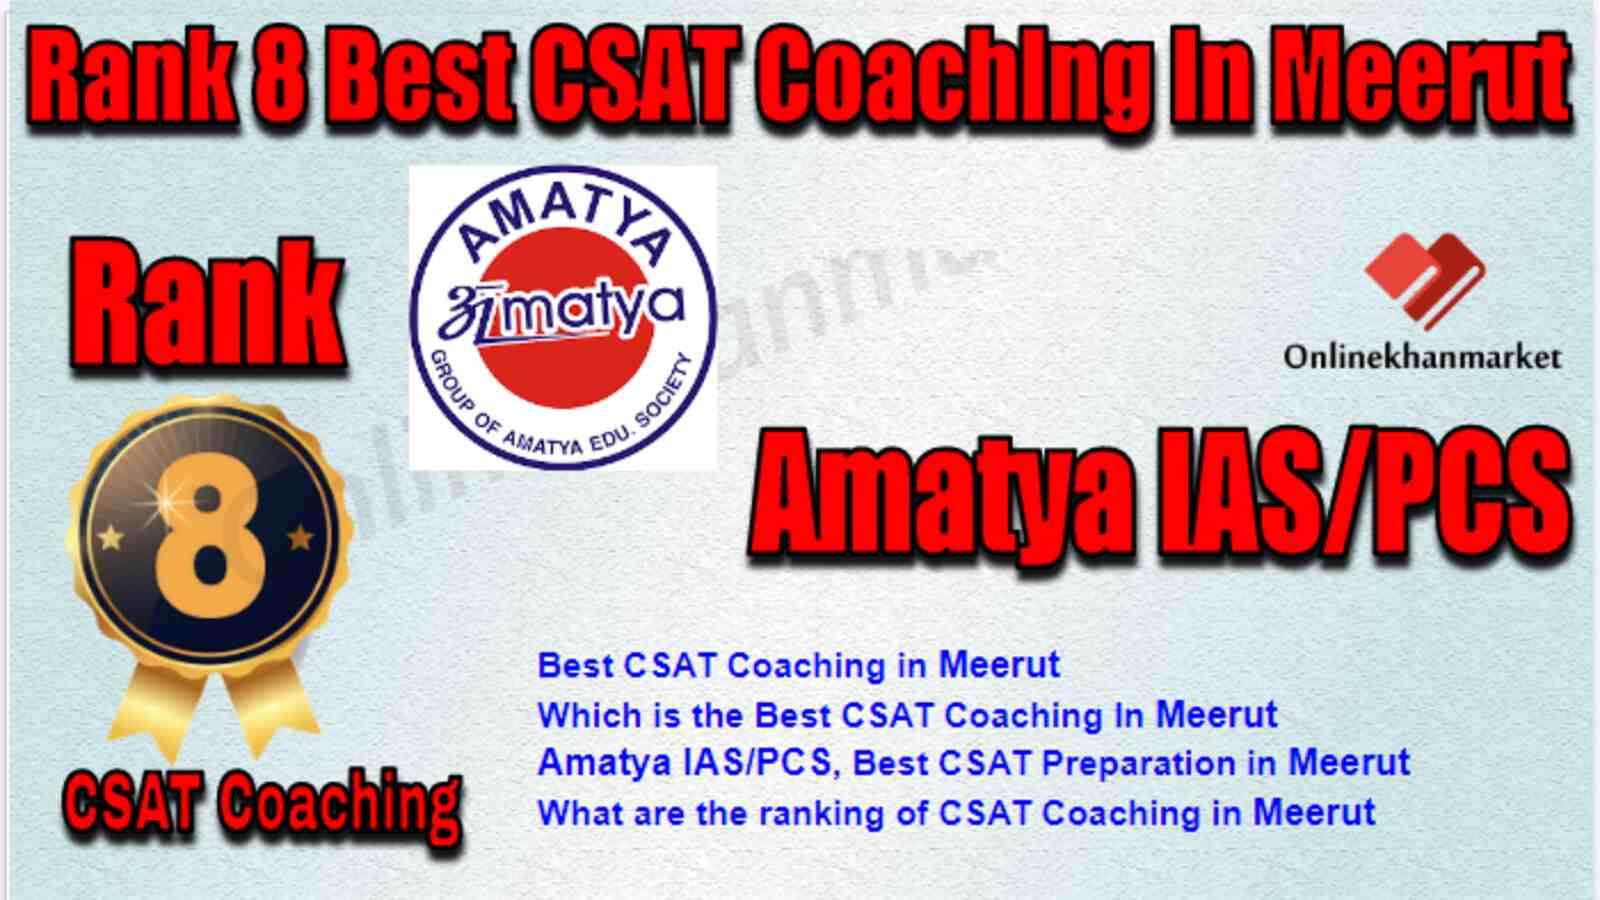 Rank 8 Best CSAT Coaching in Meerut